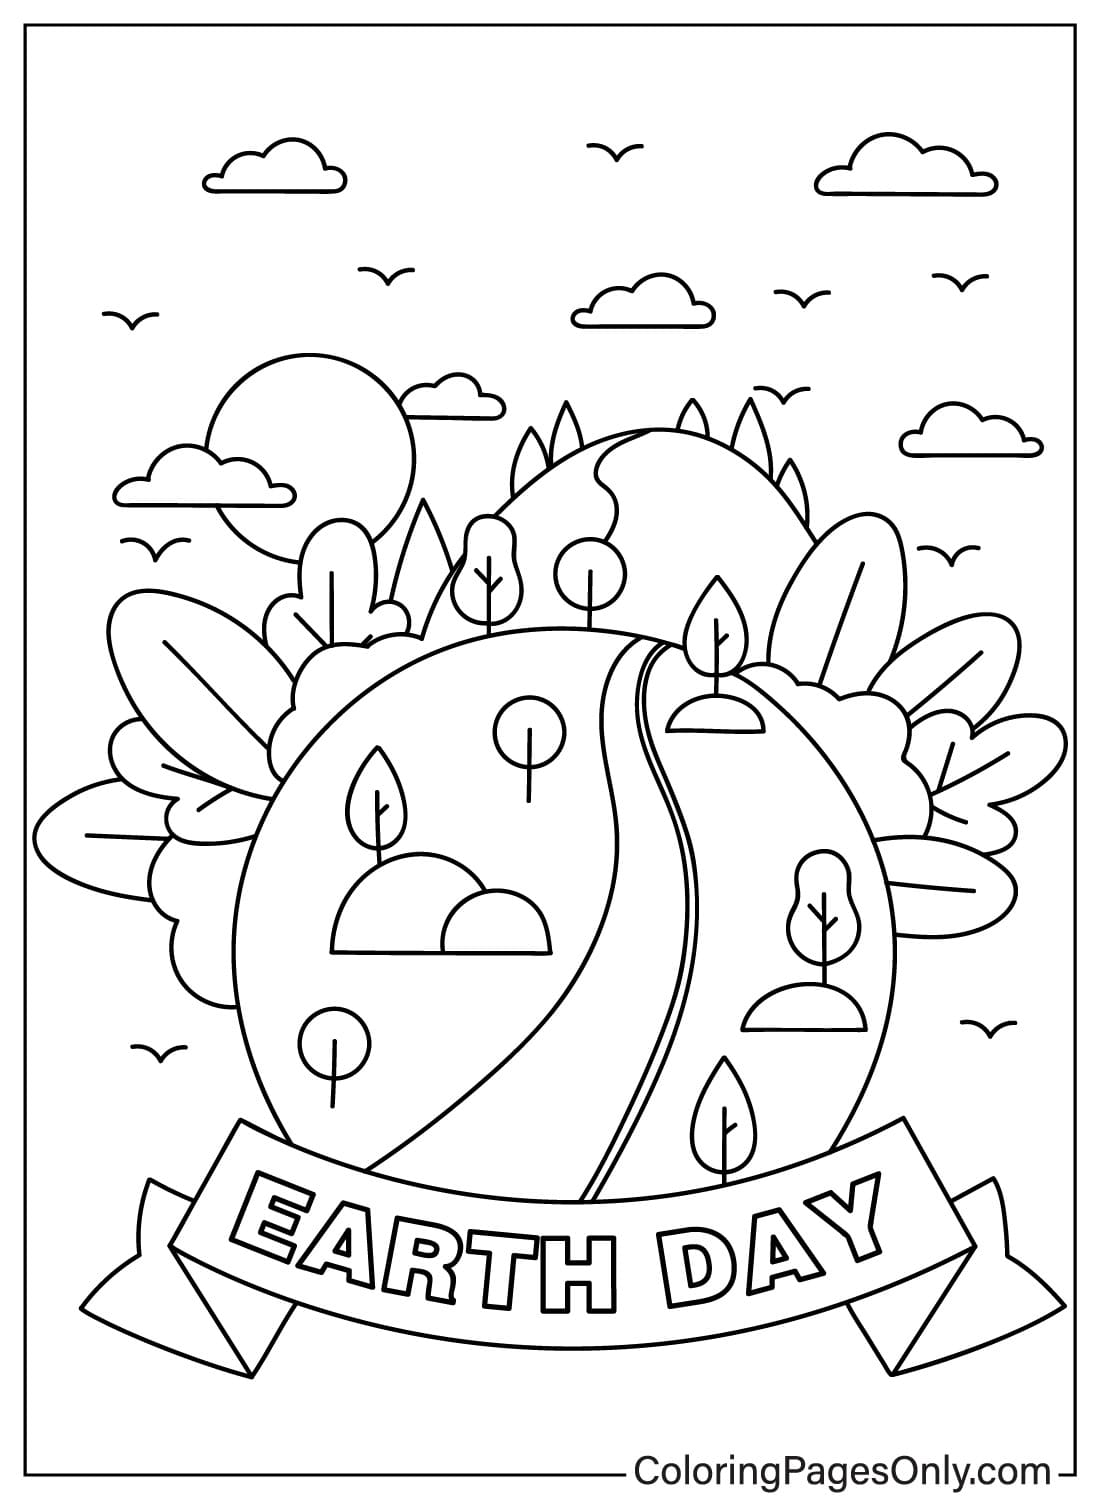 Цветной лист ко Дню Земли от Дня Земли